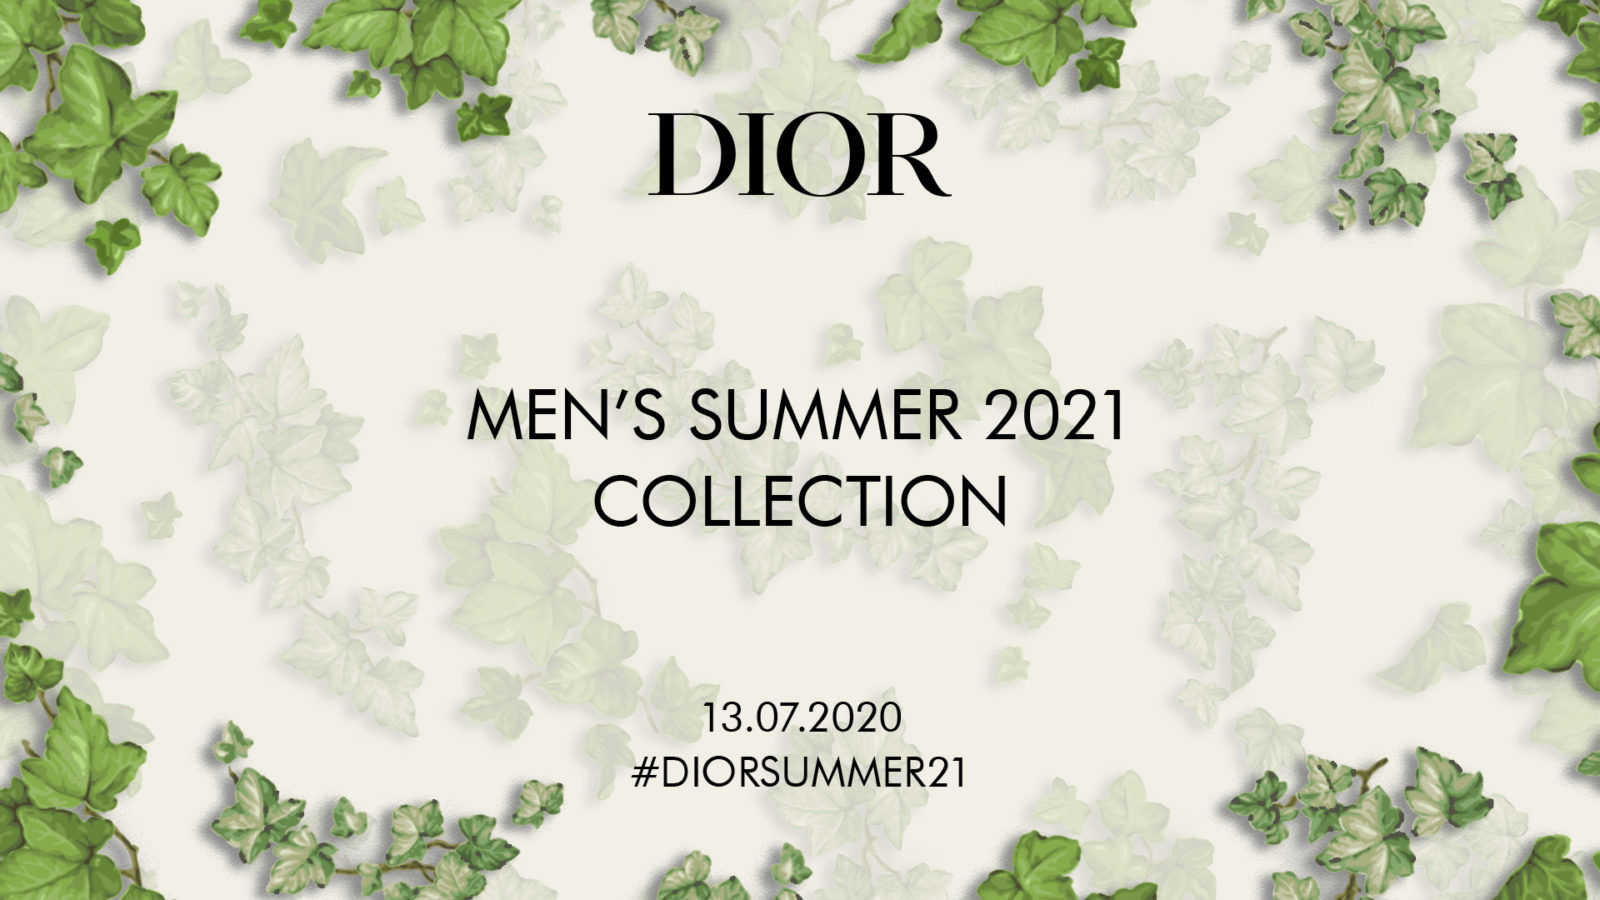 Stream Dior's Spring-Summer 2021 Show - How to Watch Paris Fashion Week